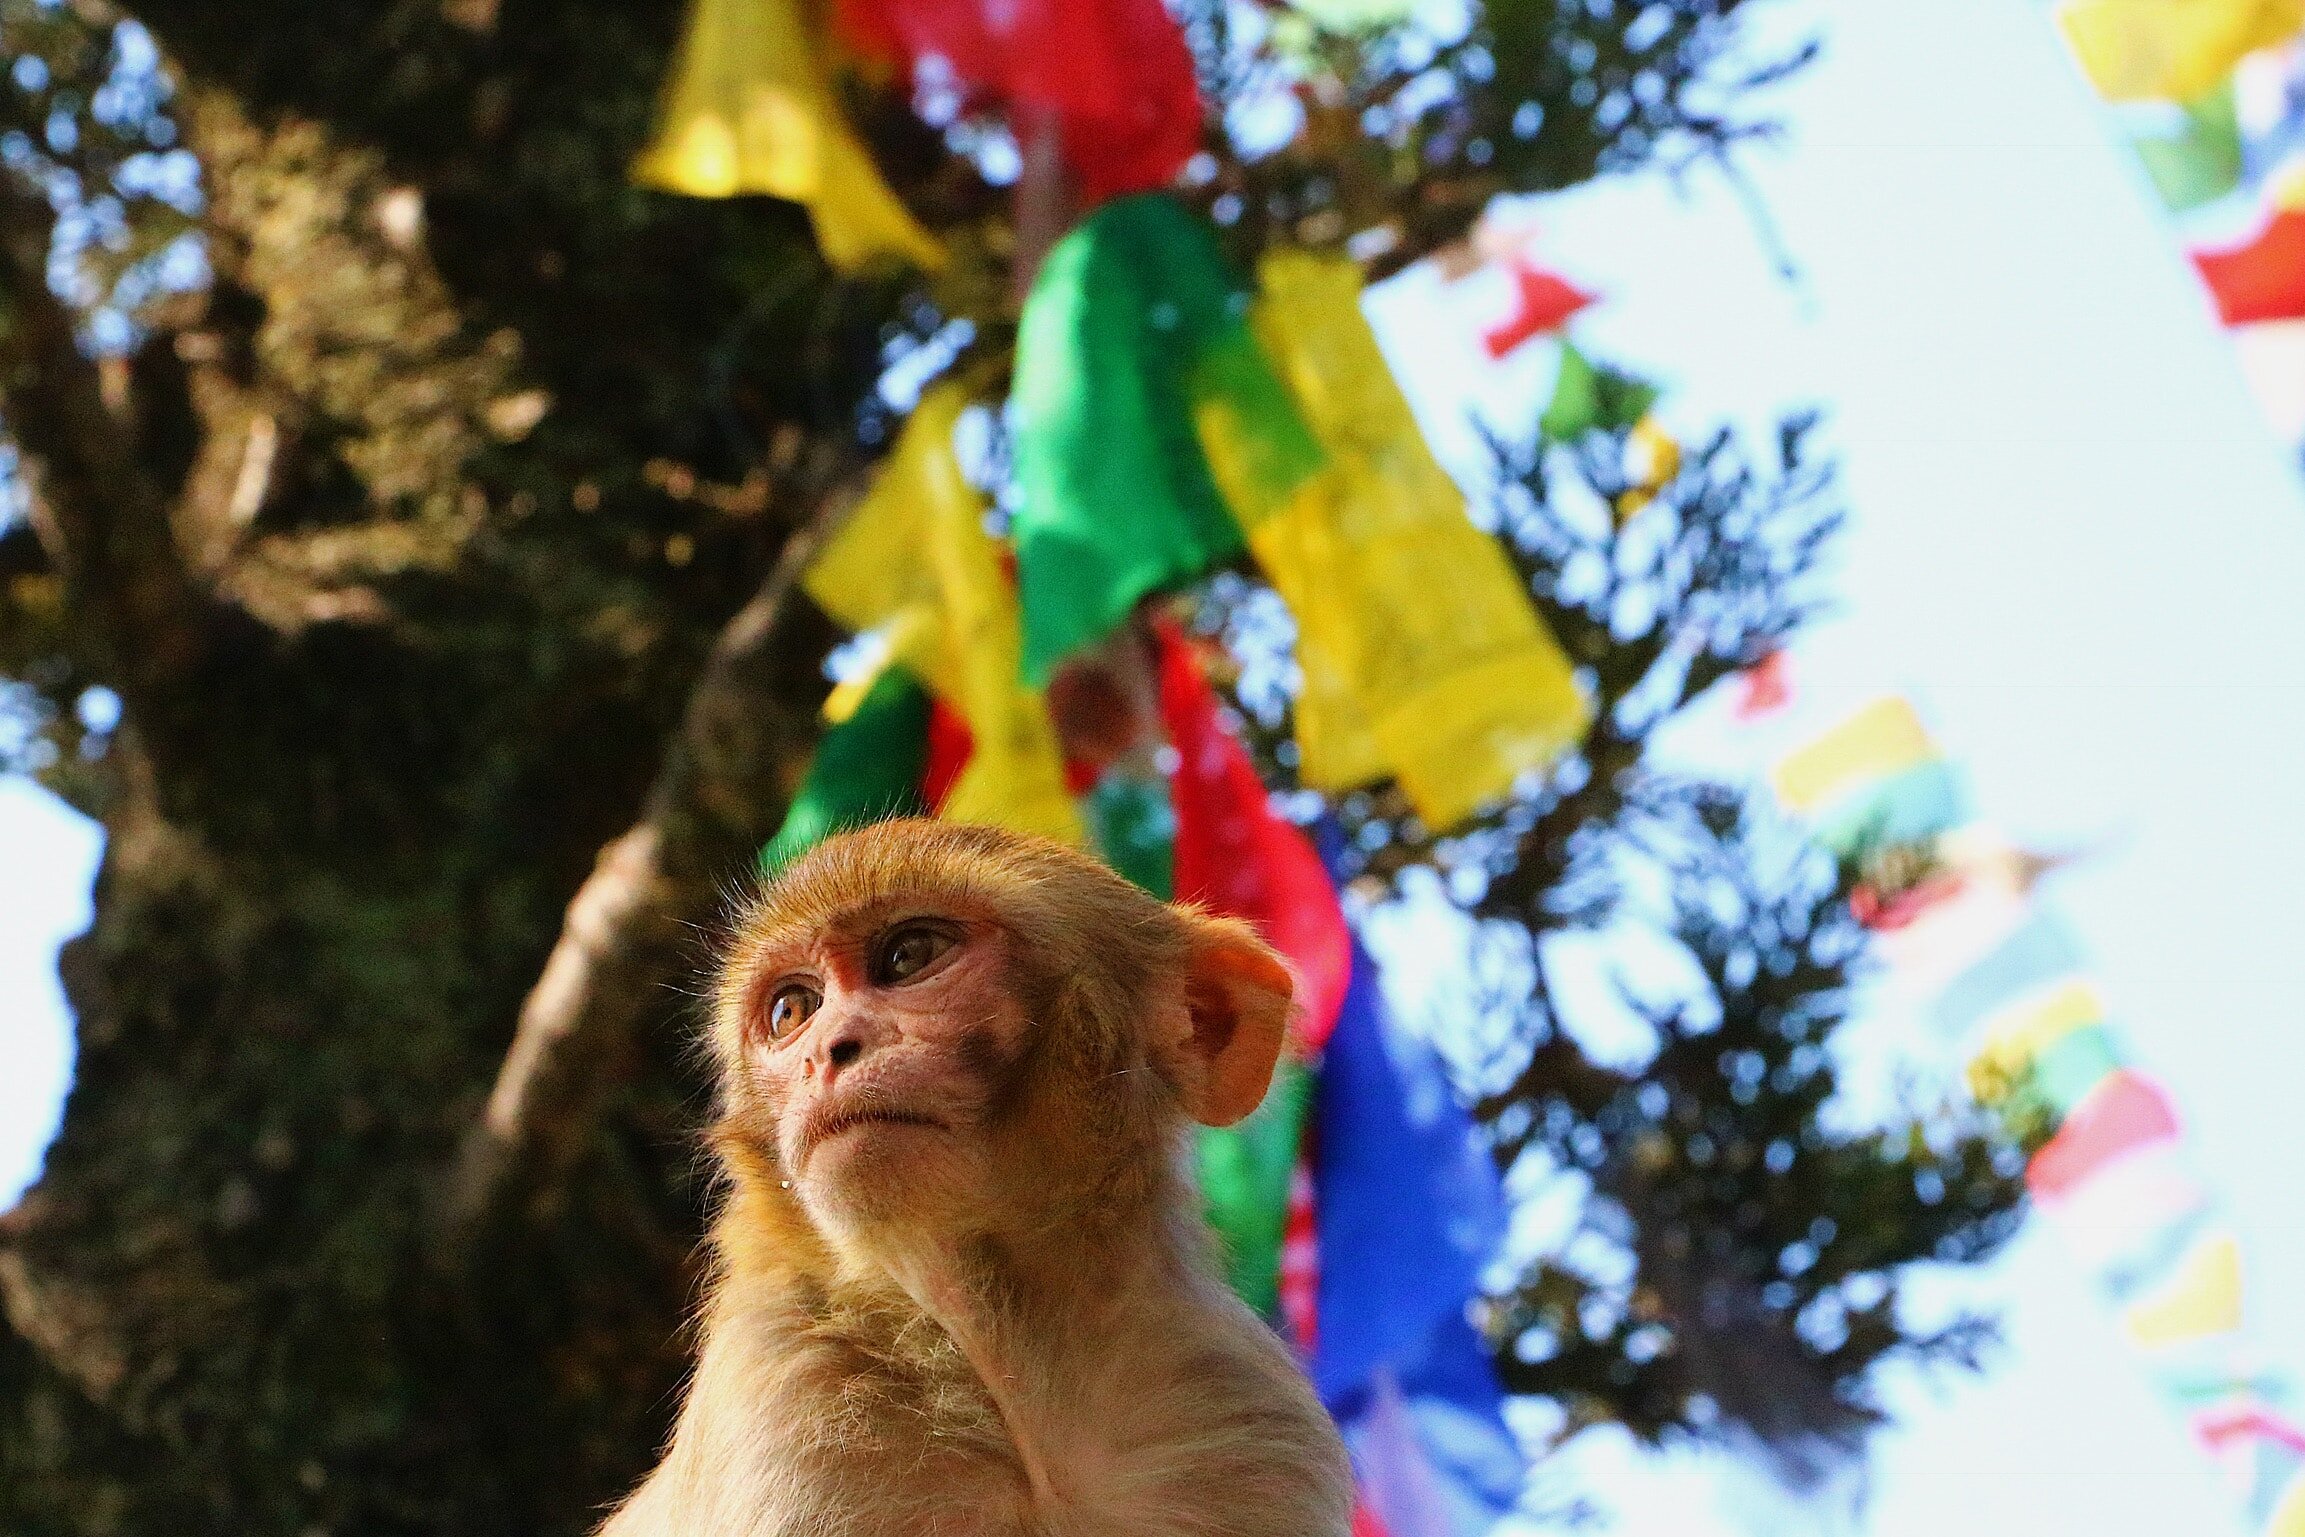  Temple monkey, Kathmandu 